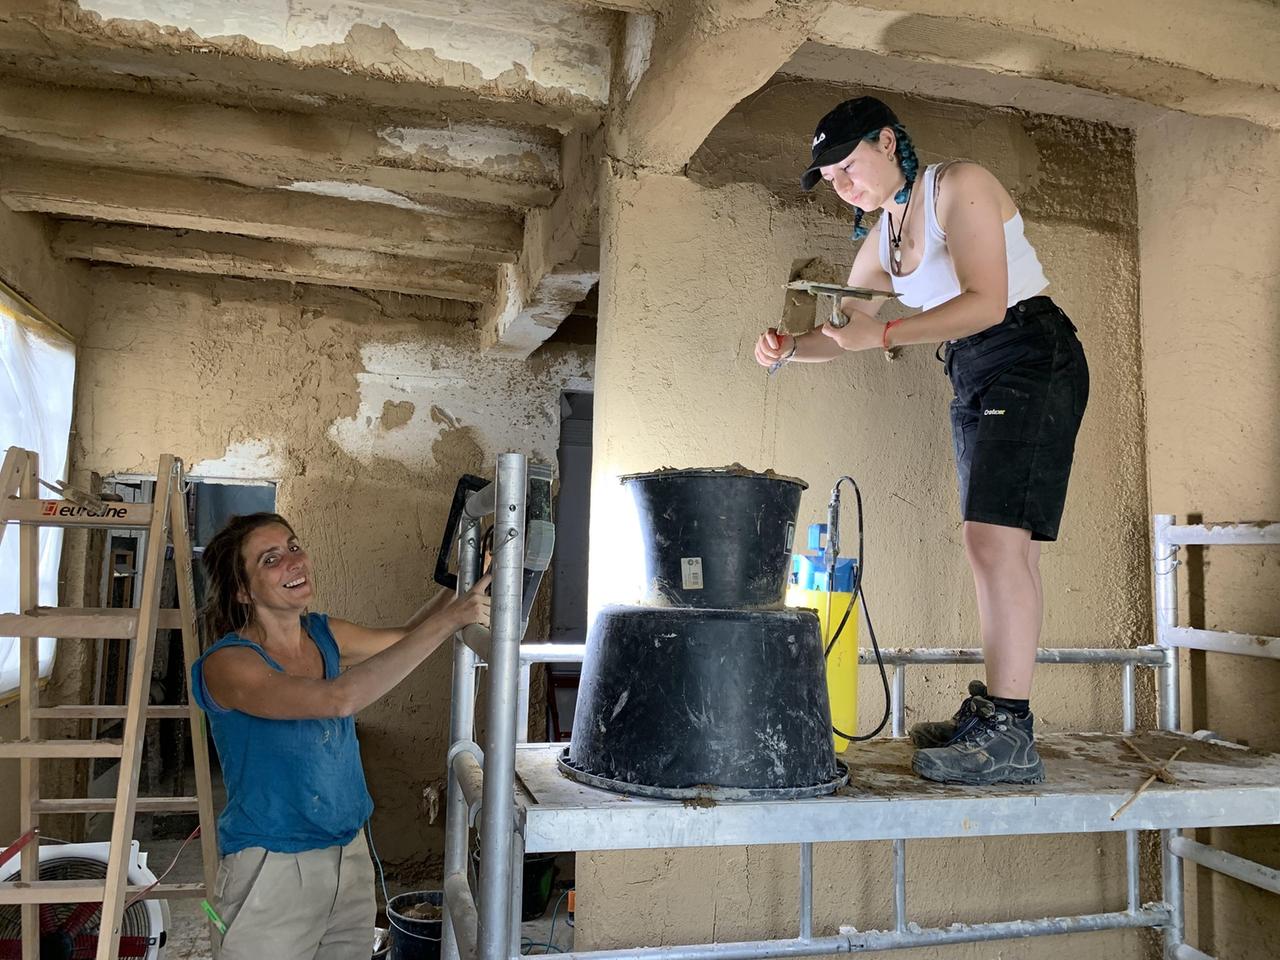 Zwei freiwillige Helferinnen des "Mobilen Teams Fluthilfe der Deutschen Stiftung Denkmalschutz" restaurieren die Innenräume eines alten Fachwerkhauses nach der Flut im Ahrtal in Rheinland-Pfalz. Eine der beiden Frauen steht auf einem Gerüst.